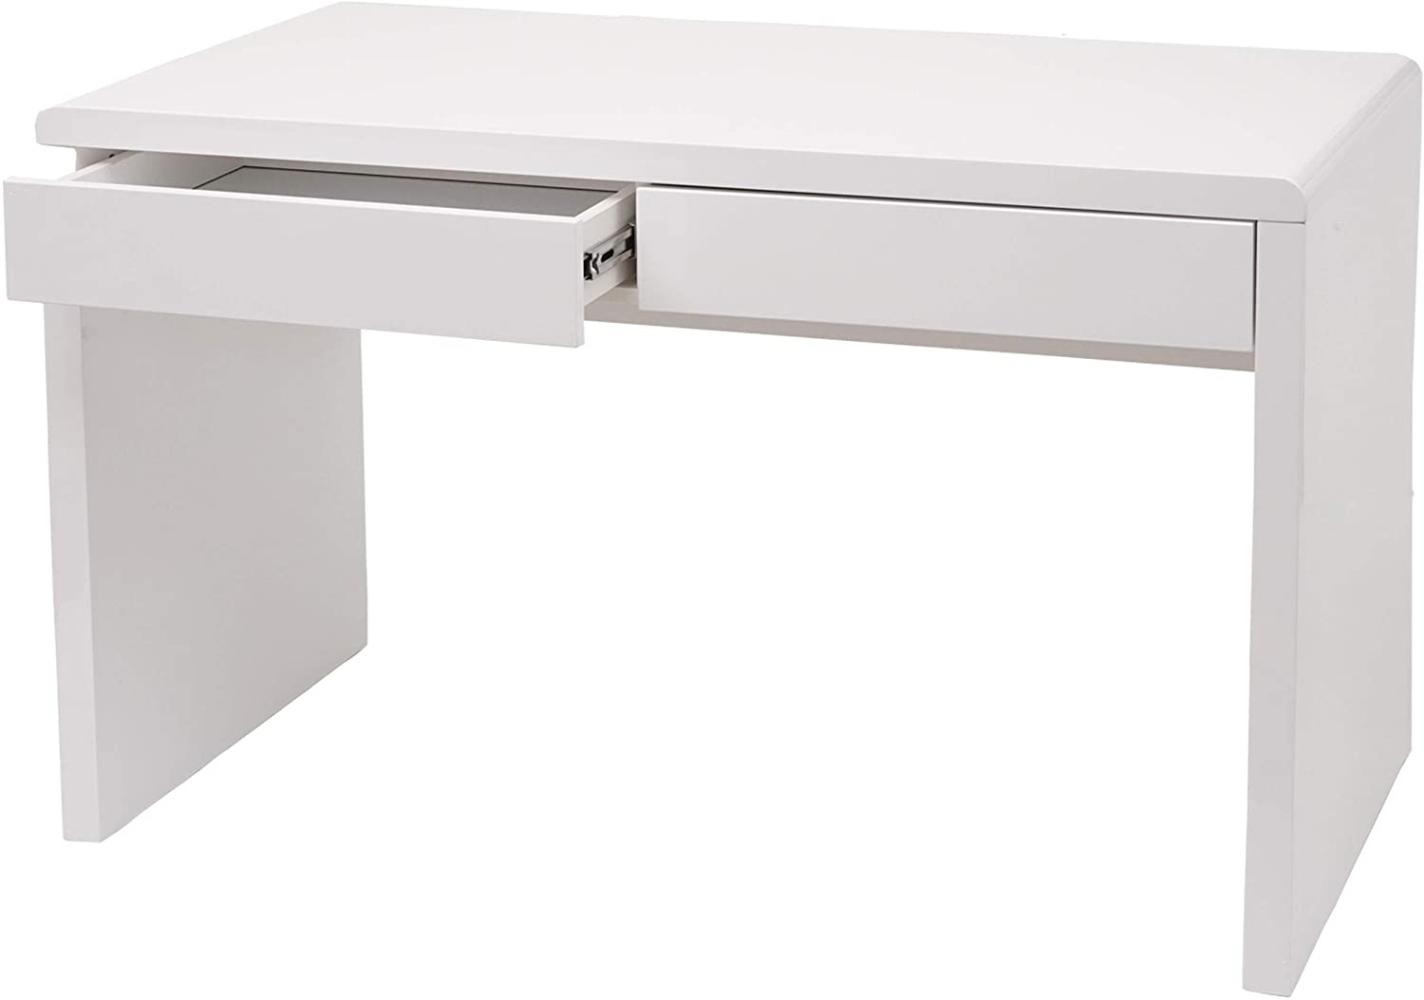 'HWC-G51' Schreibtisch mit 2 Schubladen, Hochglanz Weiß, 75 x 100 x 60 cm Bild 1